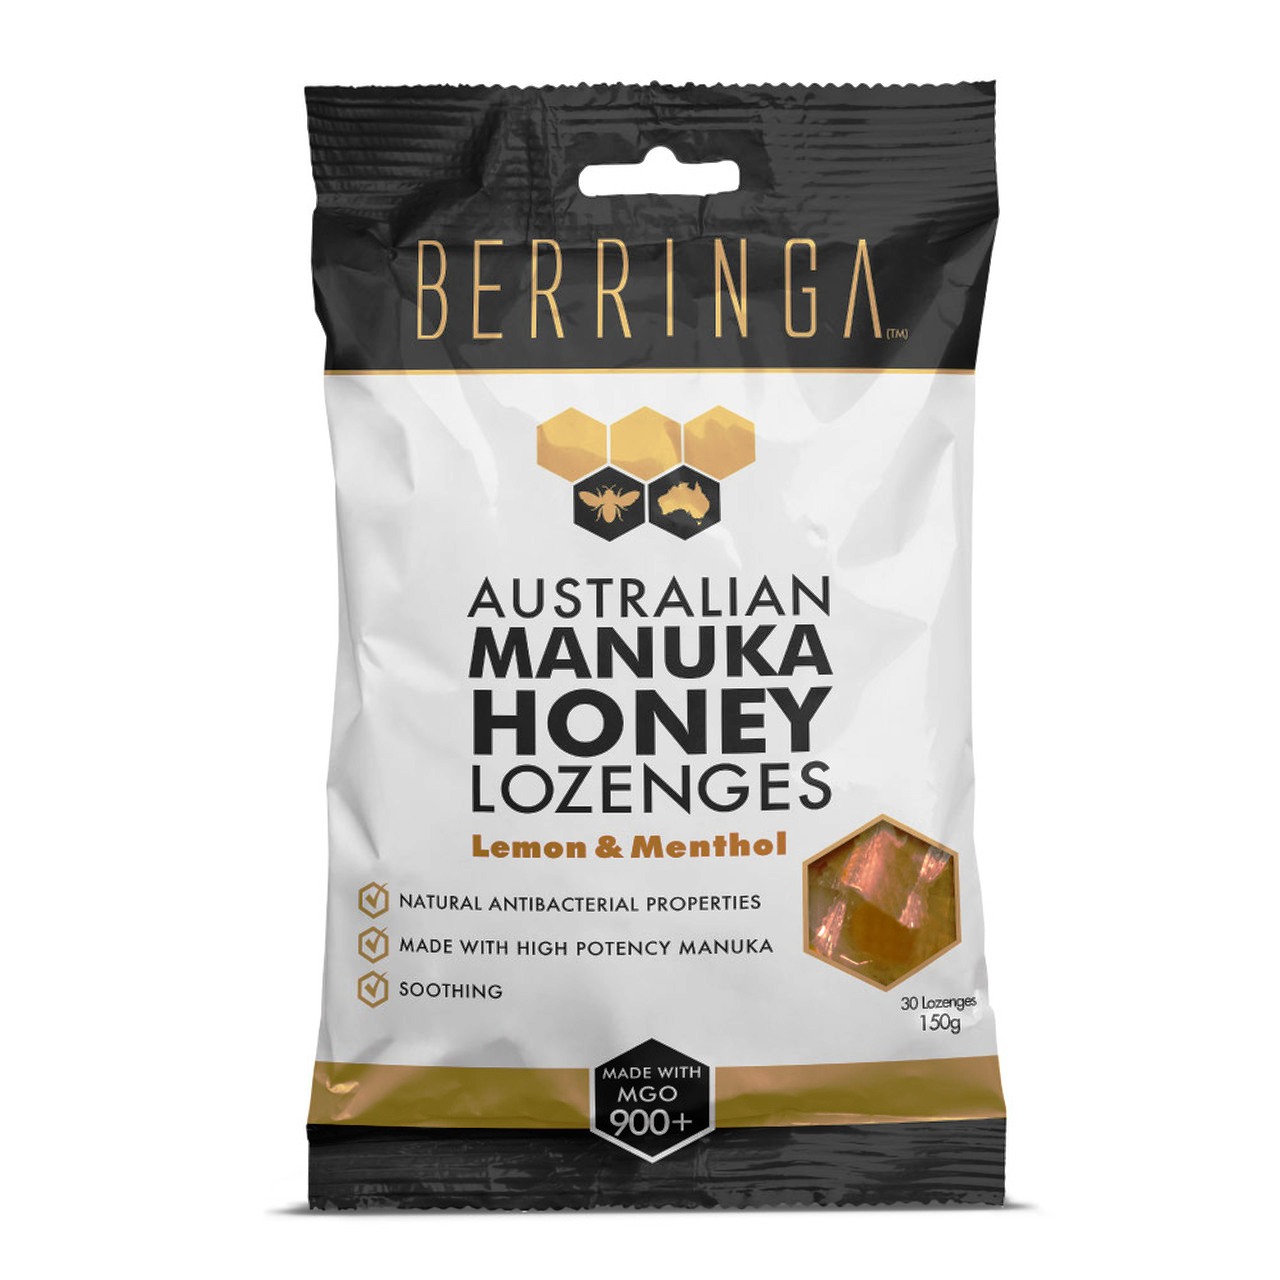 Berringa 900MGO Lozenges Manuka Honey Lemon Menthol (150g)